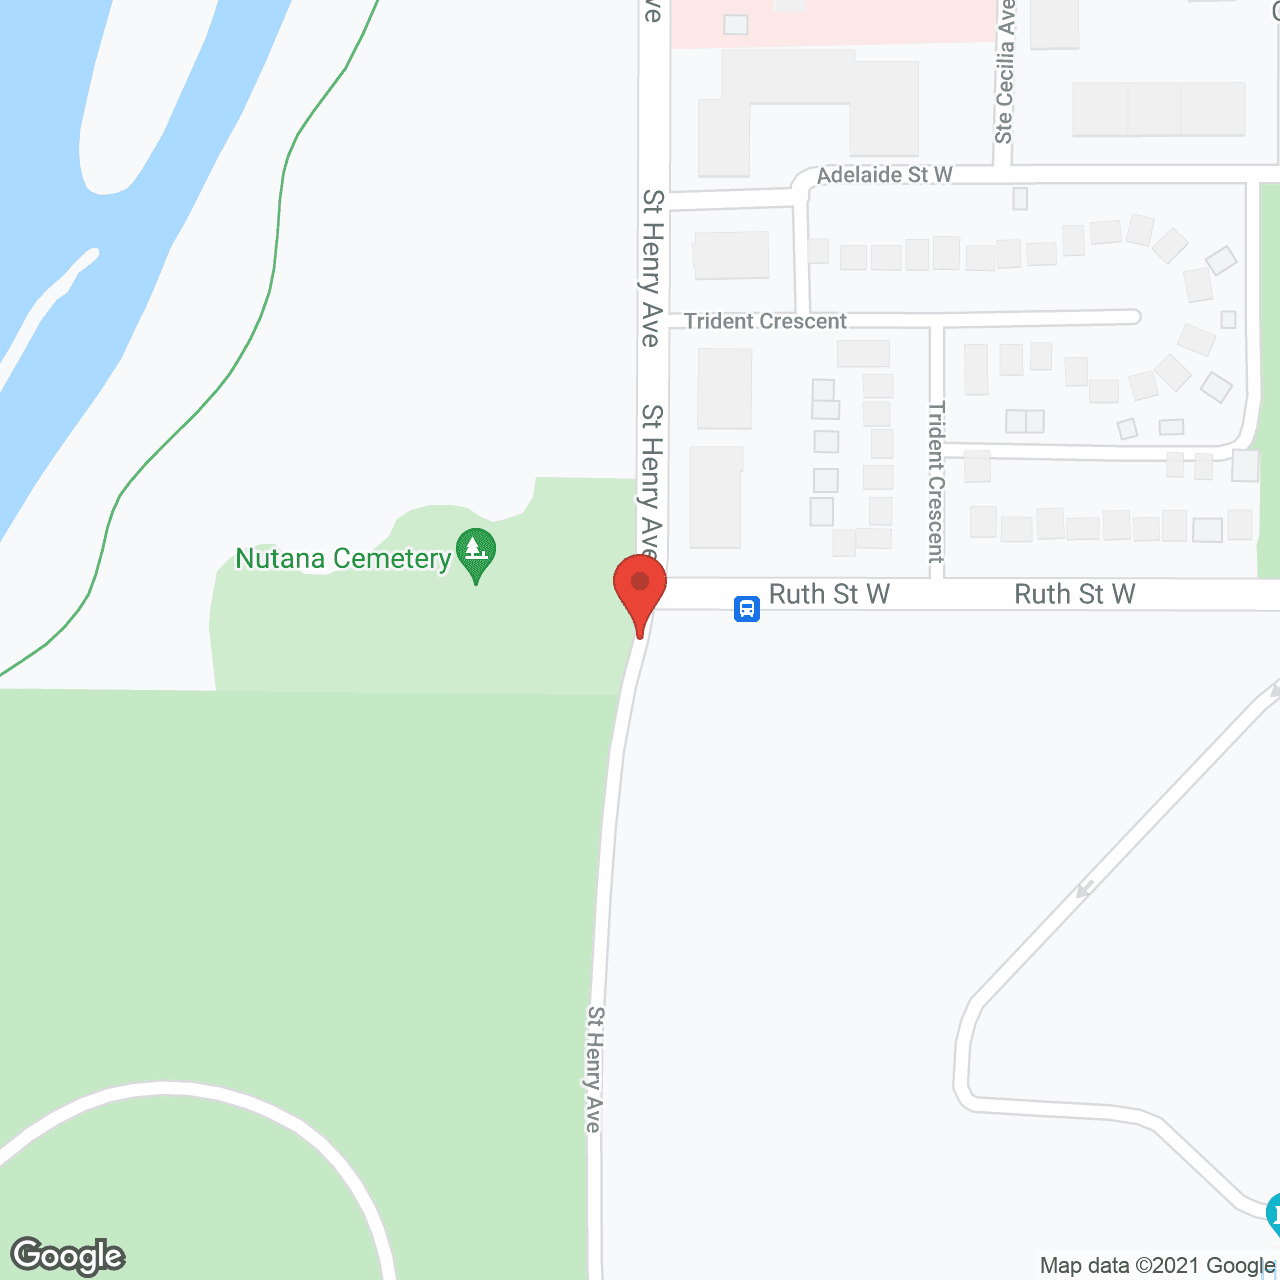 Sunnyside Nursing Home in google map